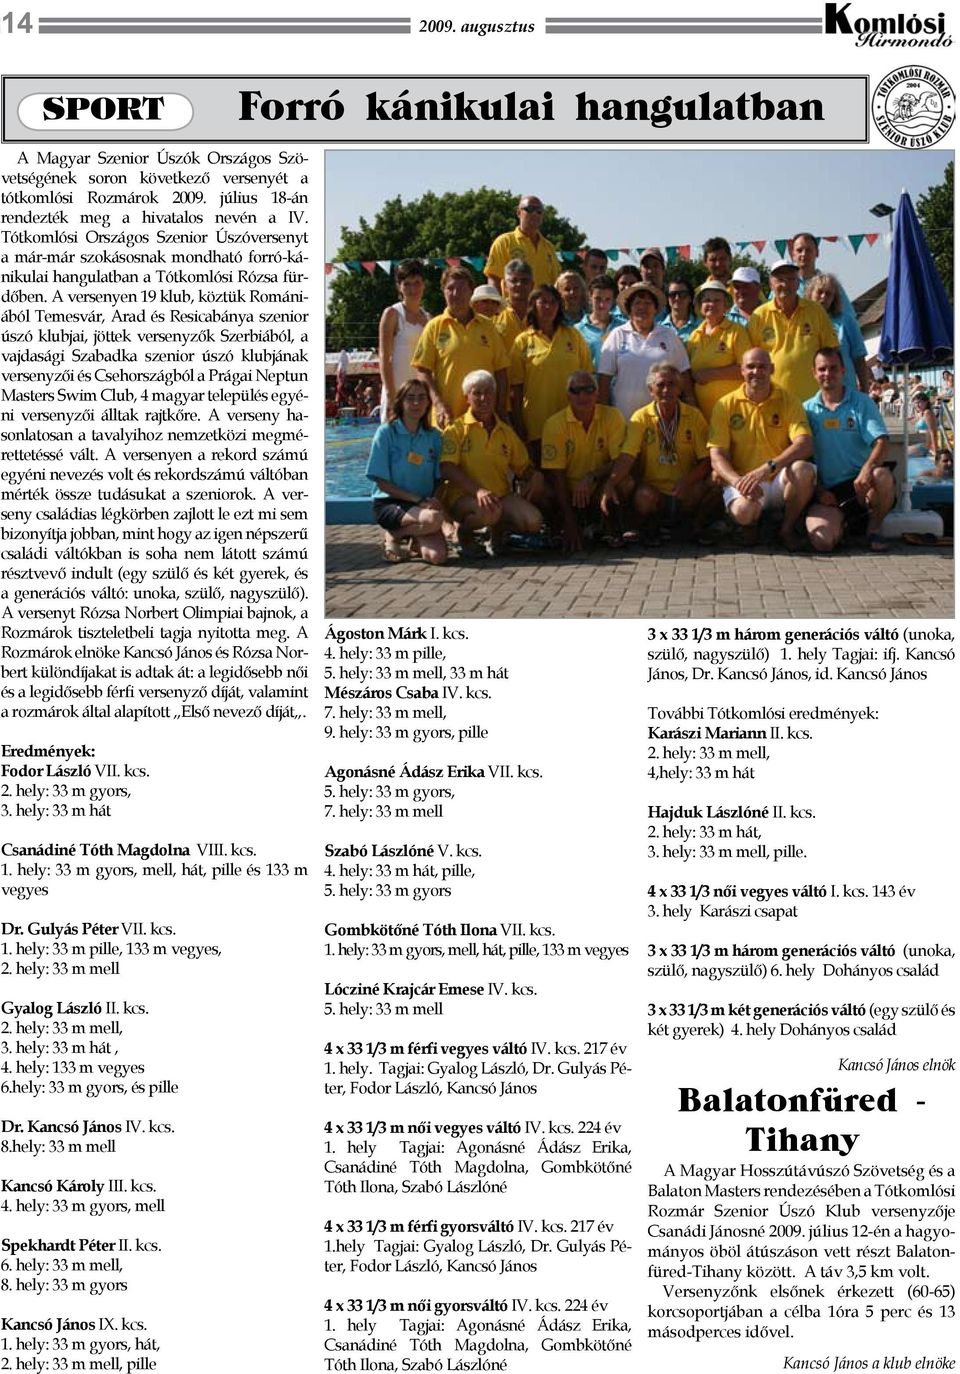 A versenyen 19 klub, köztük Romániából Temesvár, Arad és Resicabánya szenior úszó klubjai, jöttek versenyzők Szerbiából, a vajdasági Szabadka szenior úszó klubjának versenyzői és Csehországból a